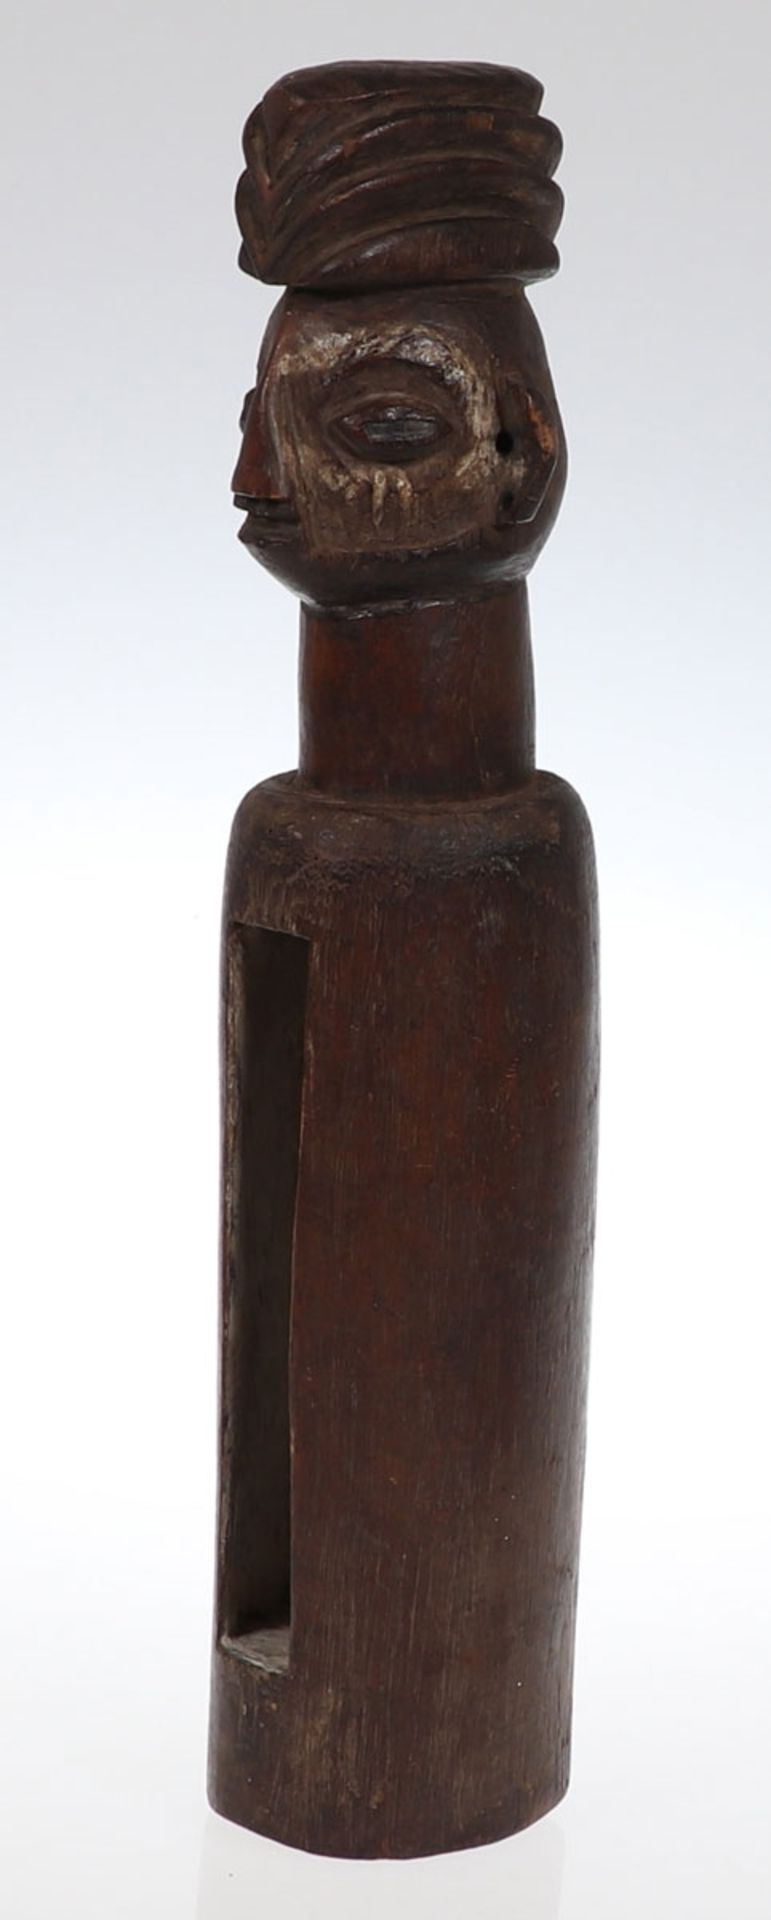 Yaka SchlitztrommelZaire. Holz, geschnitzt. H. 41 cm. Öffnung zum Aufbewahren von Medizin.